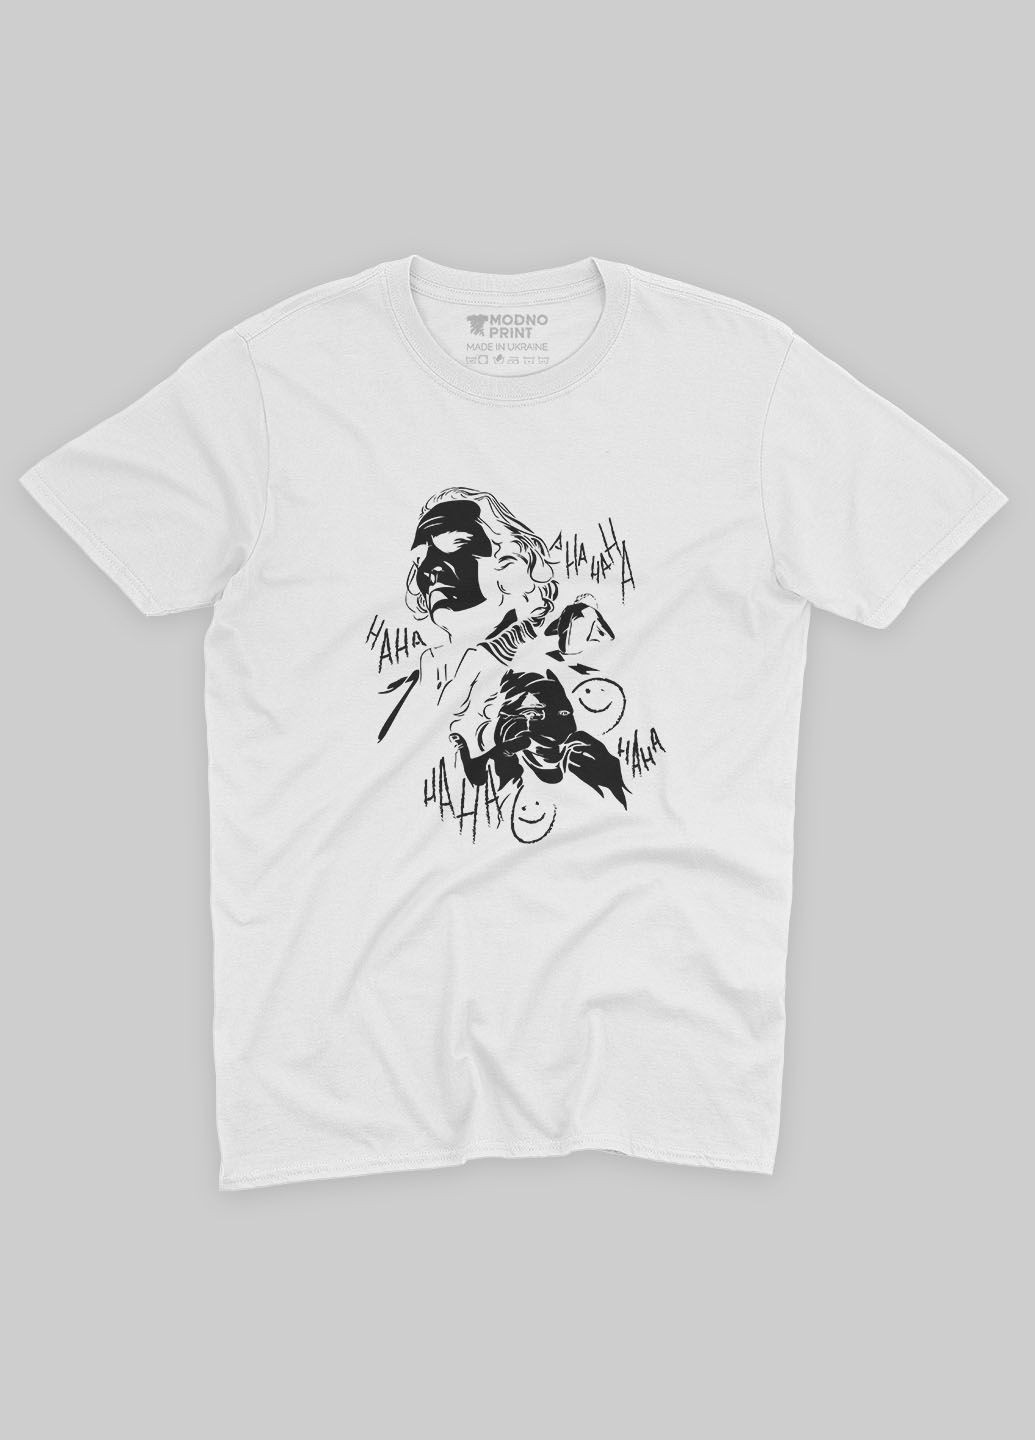 Біла демісезонна футболка для хлопчика з принтом суперзлодія - джокер (ts001-1-whi-006-005-024-b) Modno